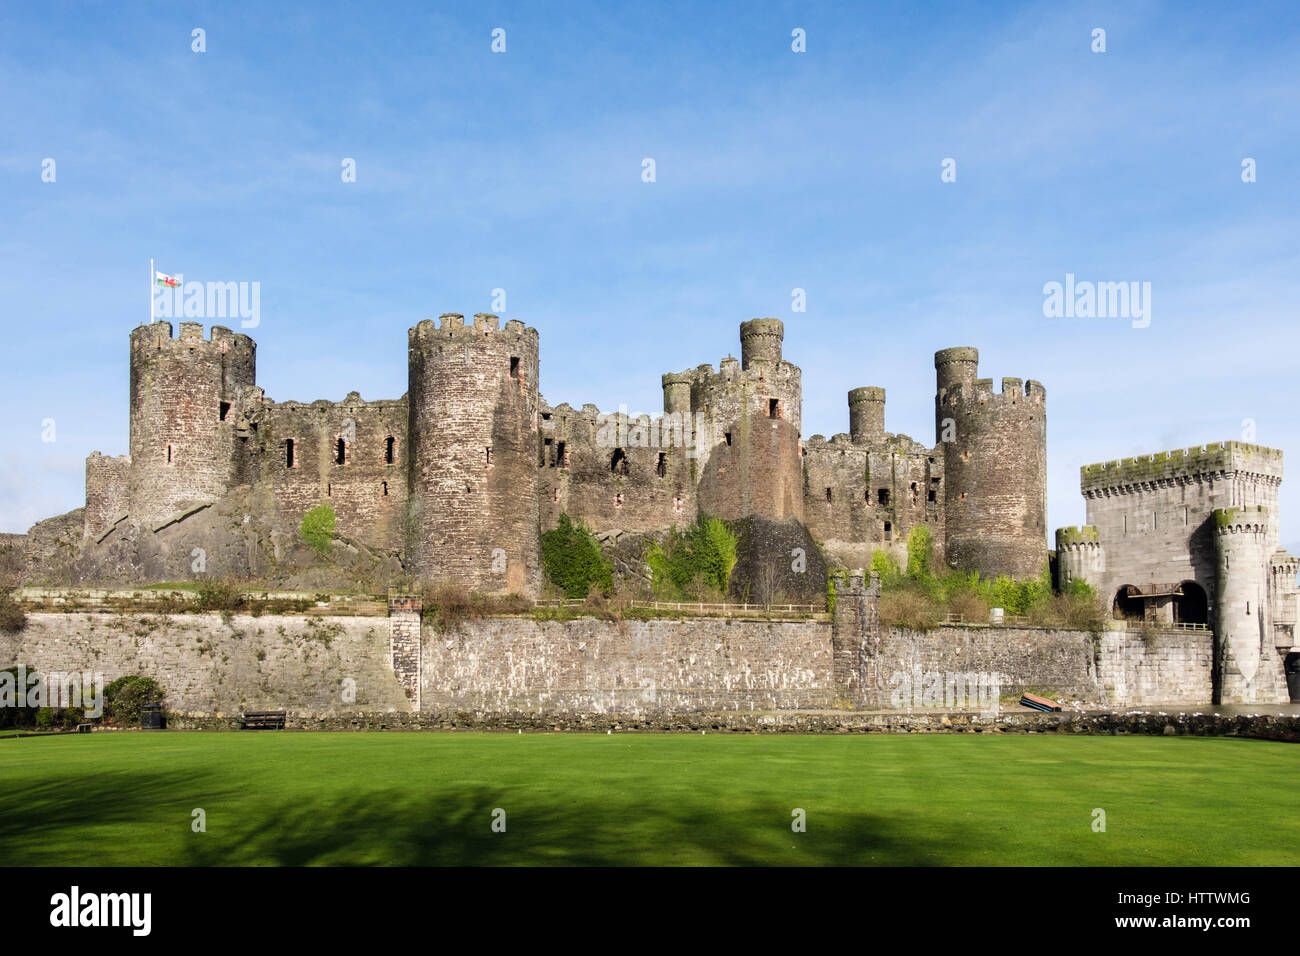 Conwy Castle merli su torri e mura con bandiera gallese battenti visto dall'esterno. Conwy, Wales, Regno Unito, Gran Bretagna, Europa Foto Stock